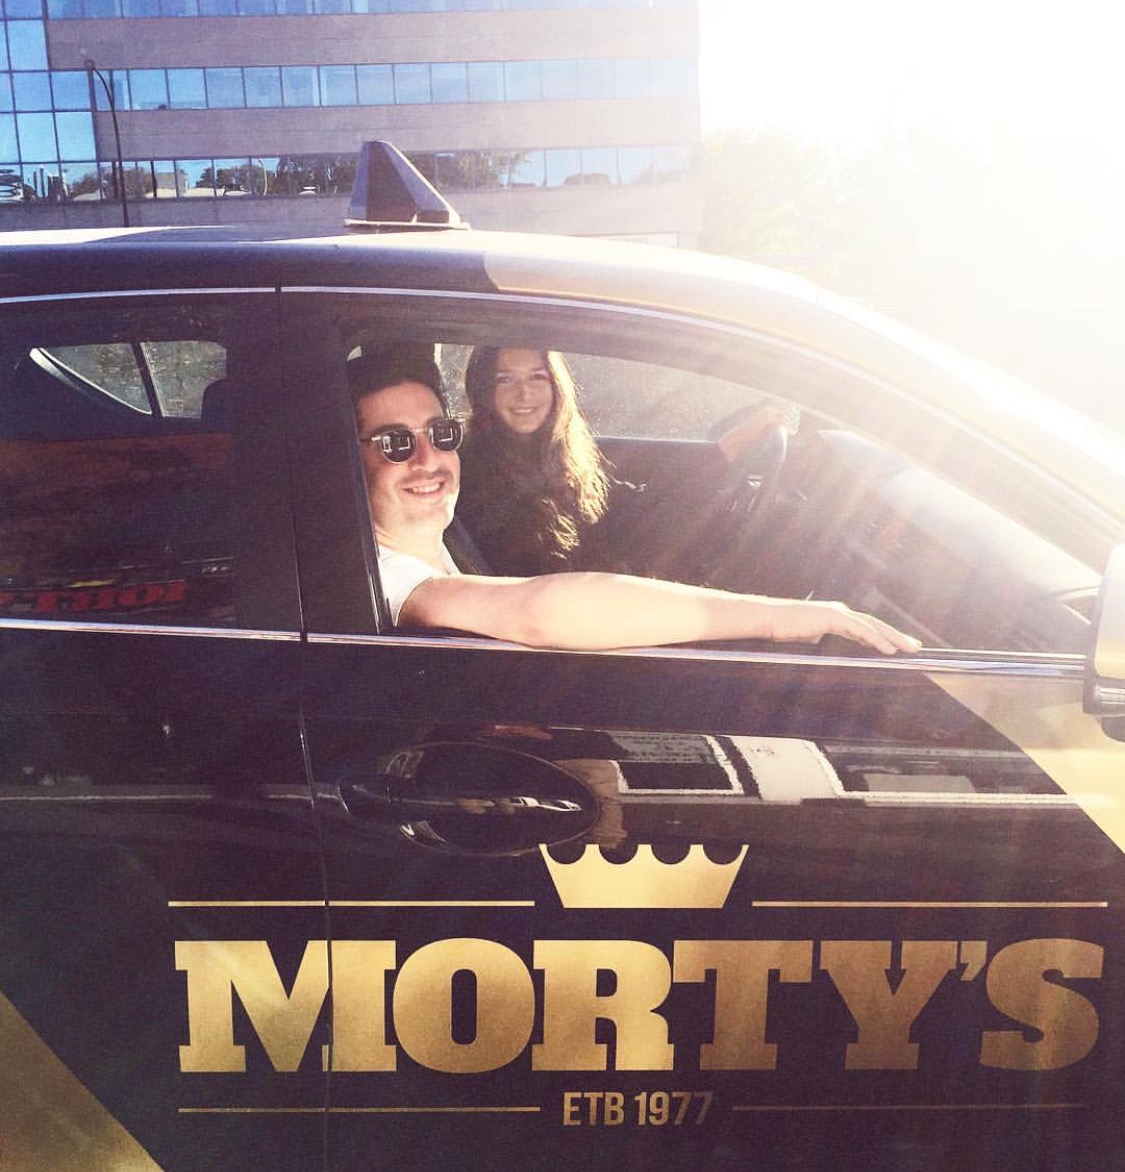 Morty's Driving School - Dollard-des-Ormeaux 4230 Boul. Saint-Jean #245, Dollard-des-Ormeaux Quebec H9H 3X4